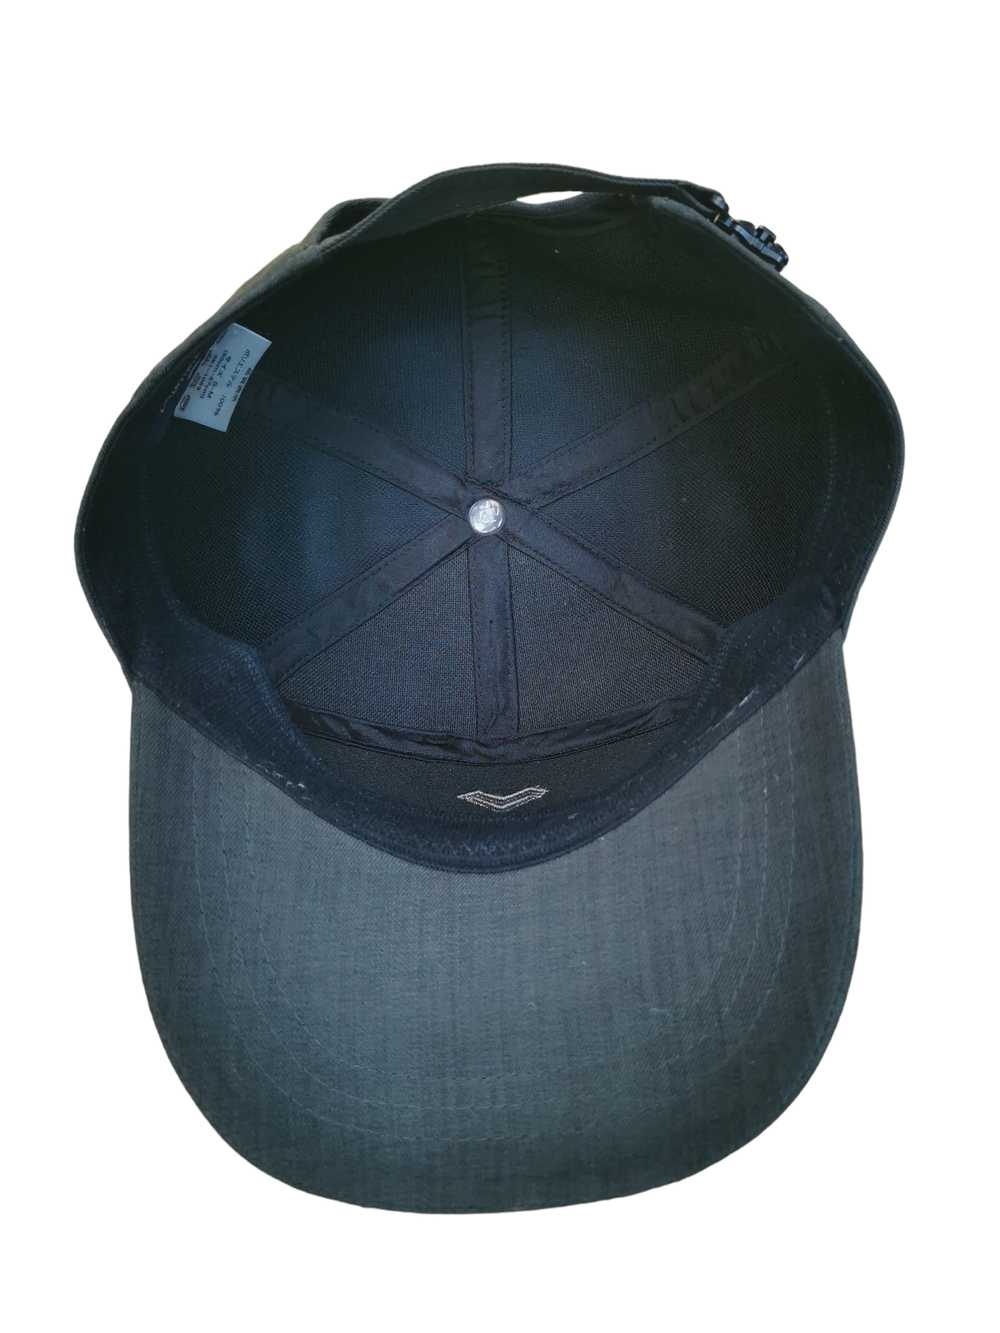 MARIO VALENTINO DESIGNER HAT CAP - image 6